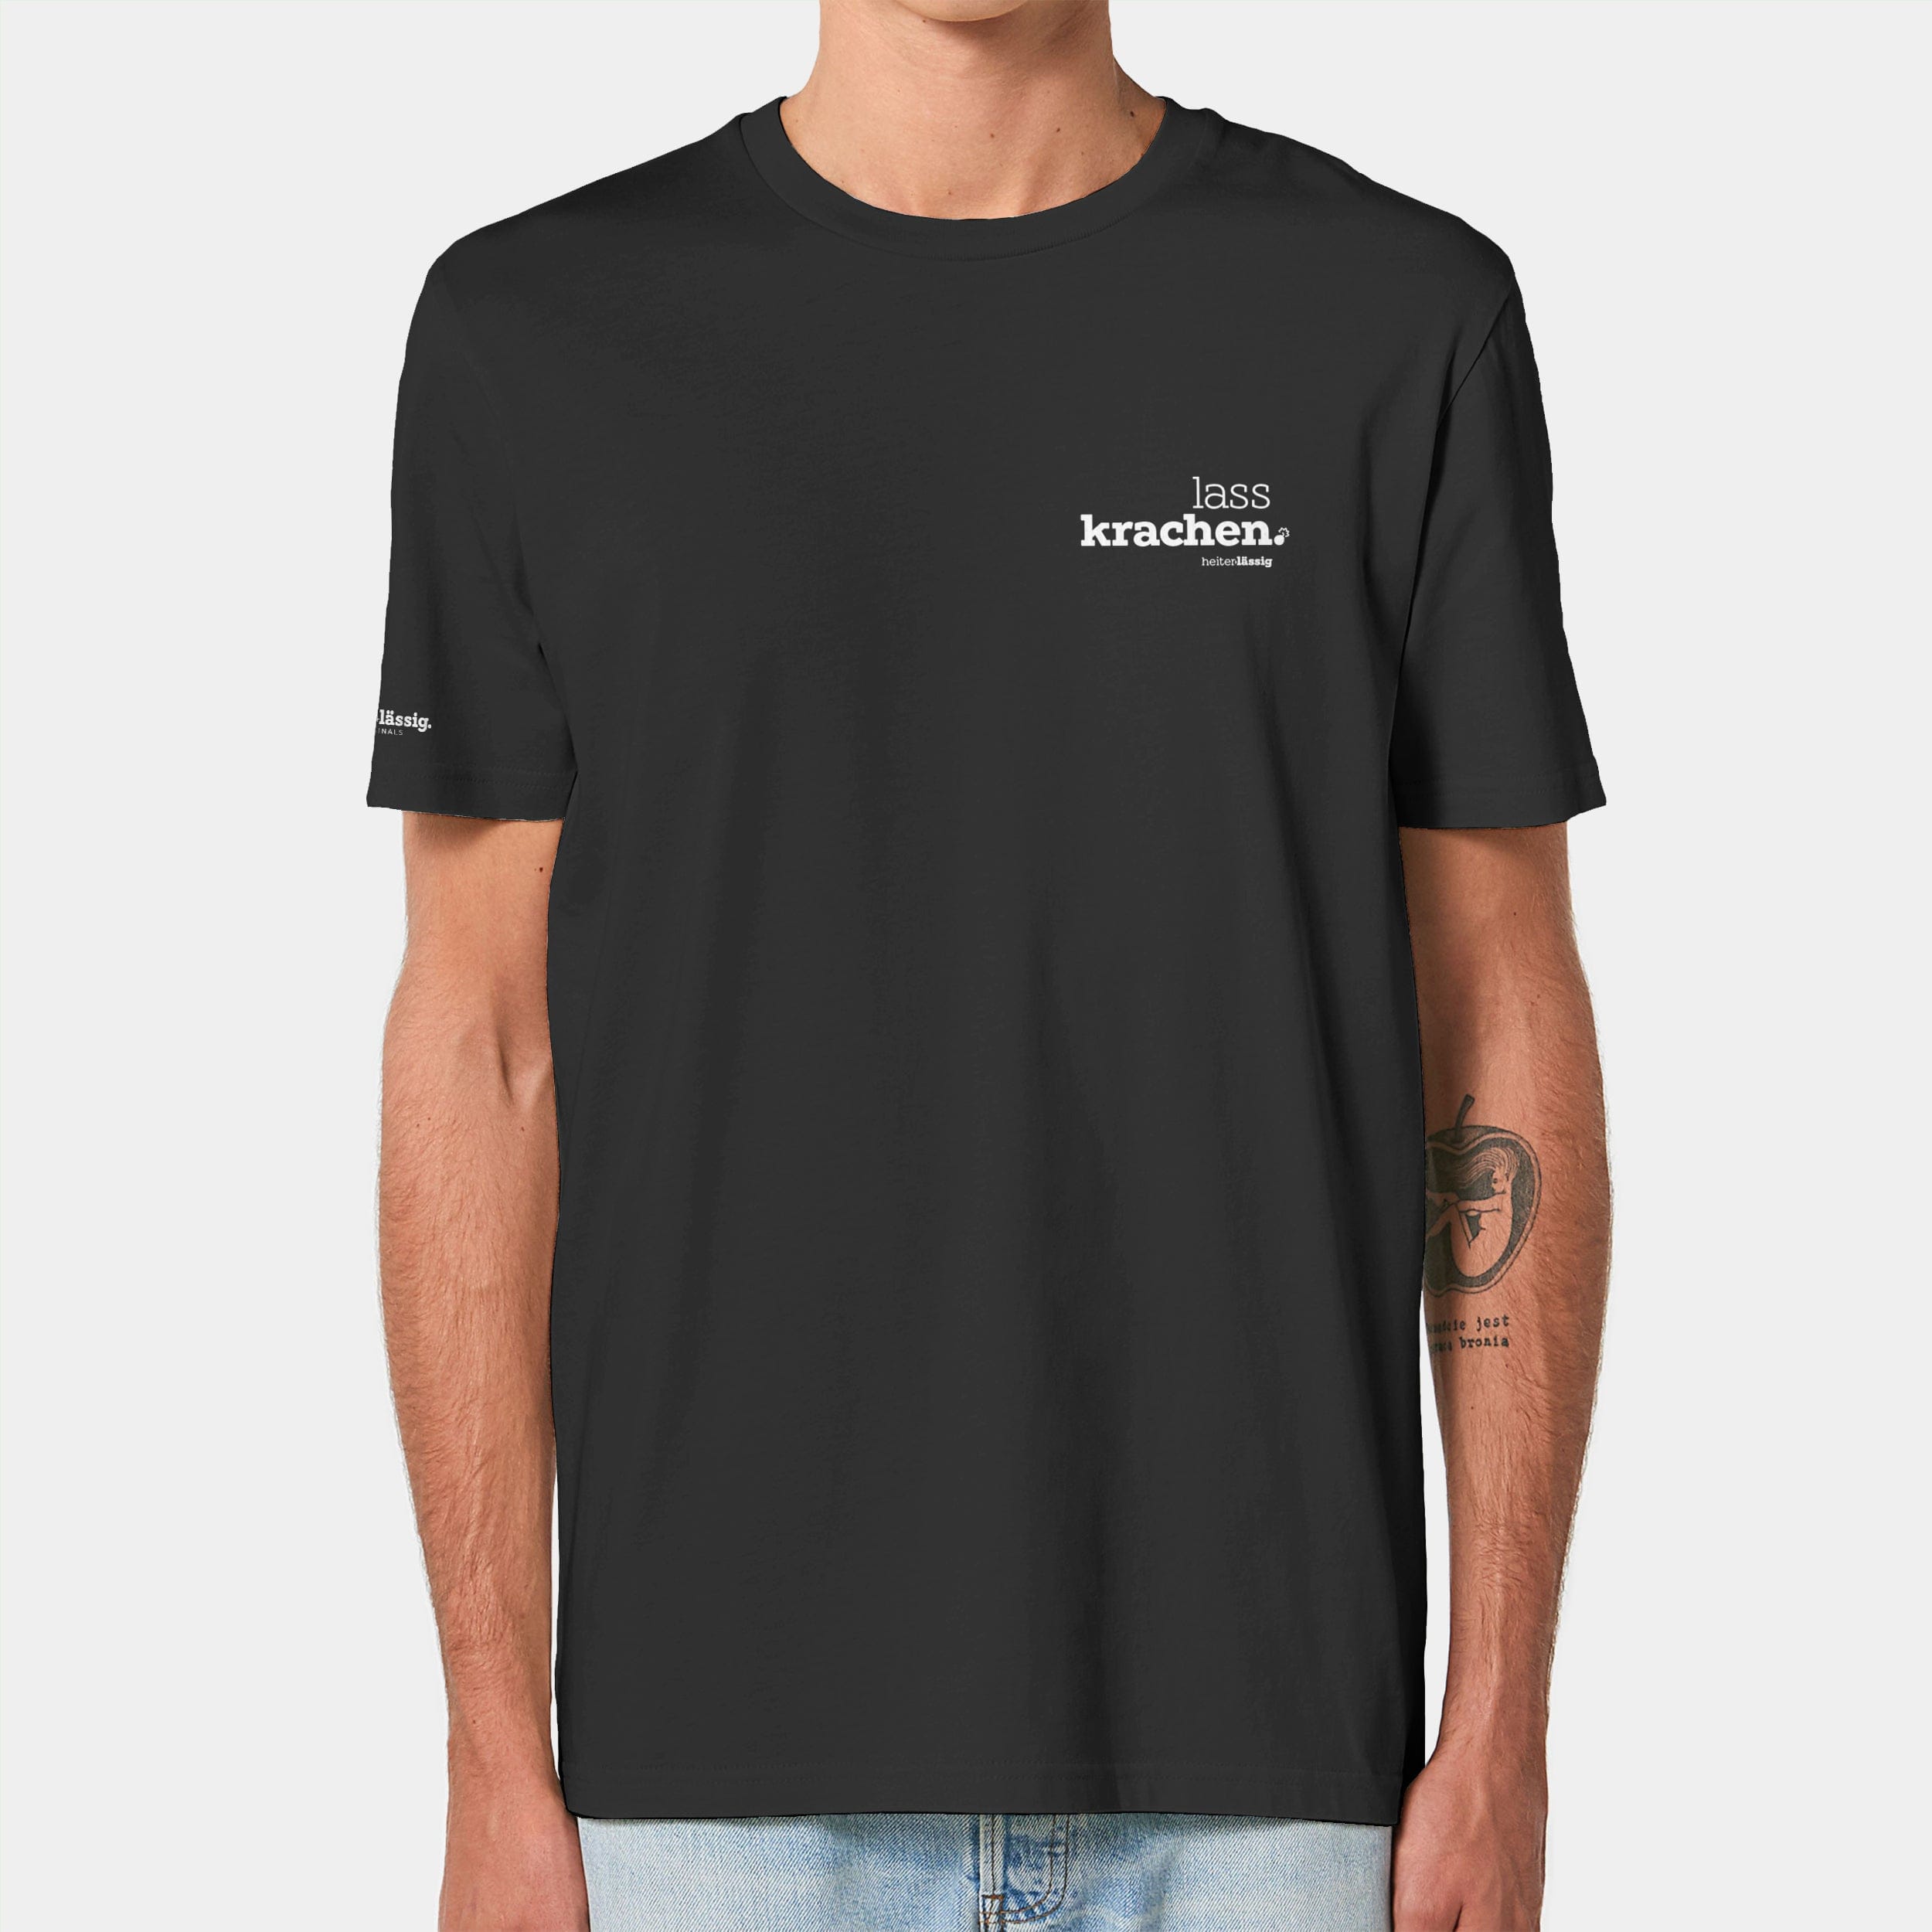 HEITER & LÄSSIG T-Shirt ORIGINAL "lasskrachen" XXS / schwarz - aus nachhaltiger und fairer Produktion